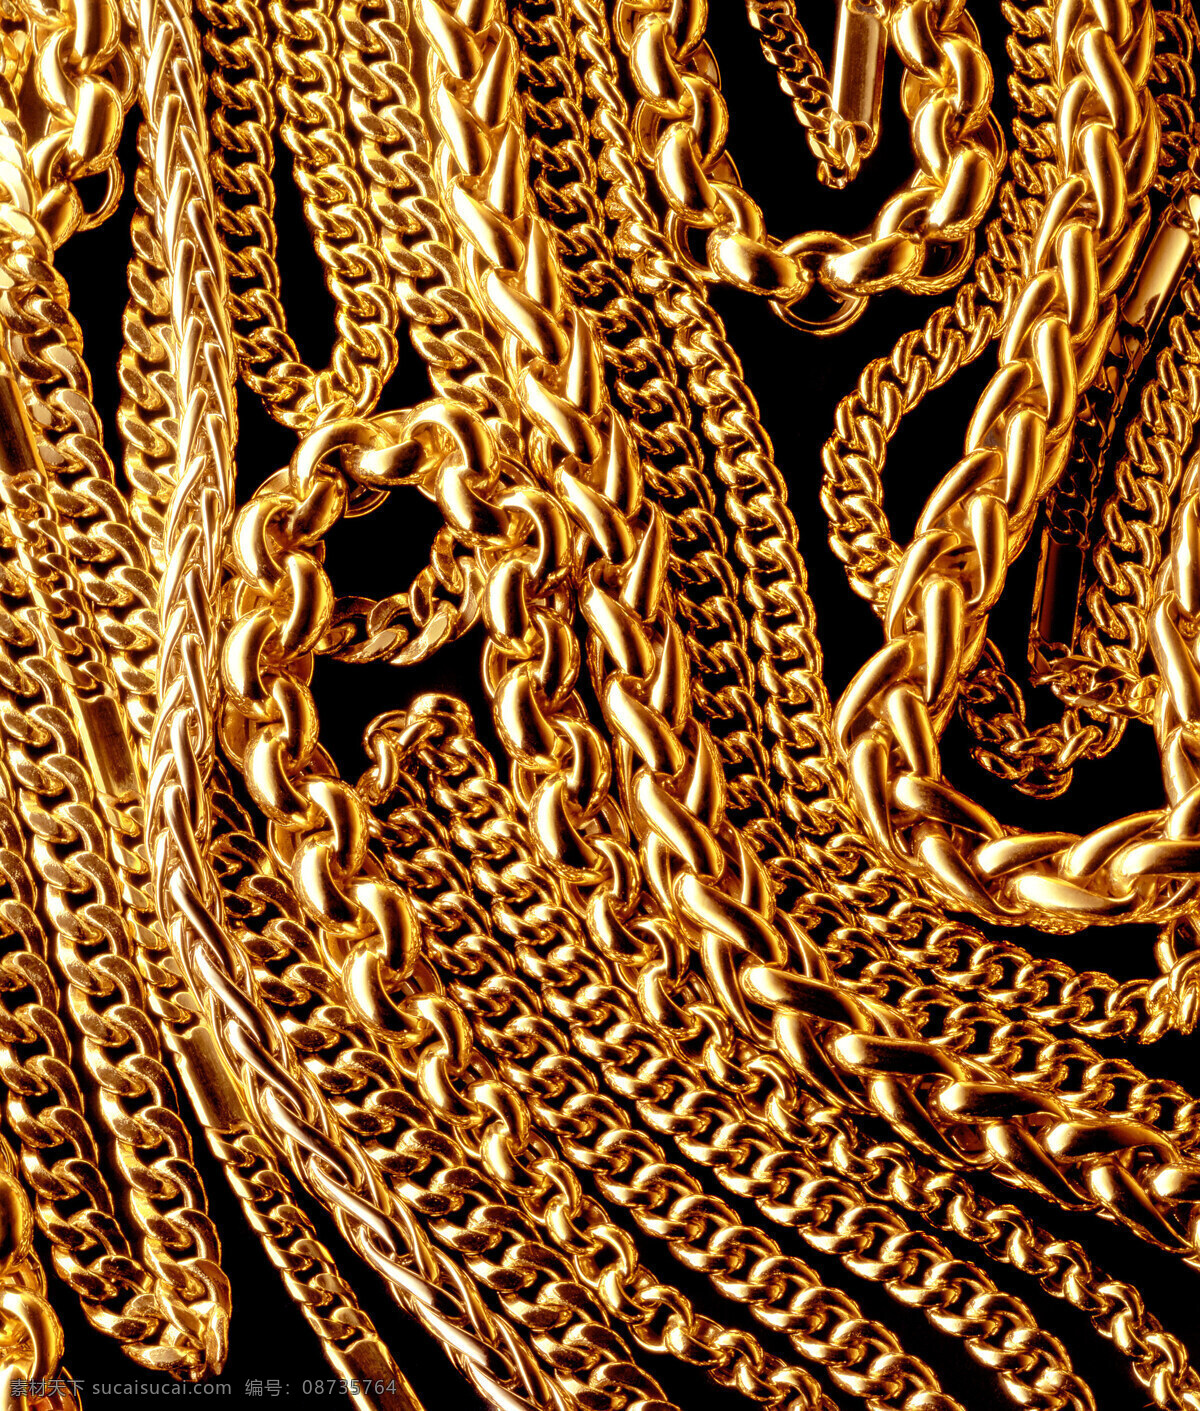 黄金 制品 金砖 金子 金条 金块 金黄 金融素材 金融货币 金项练 商务金融